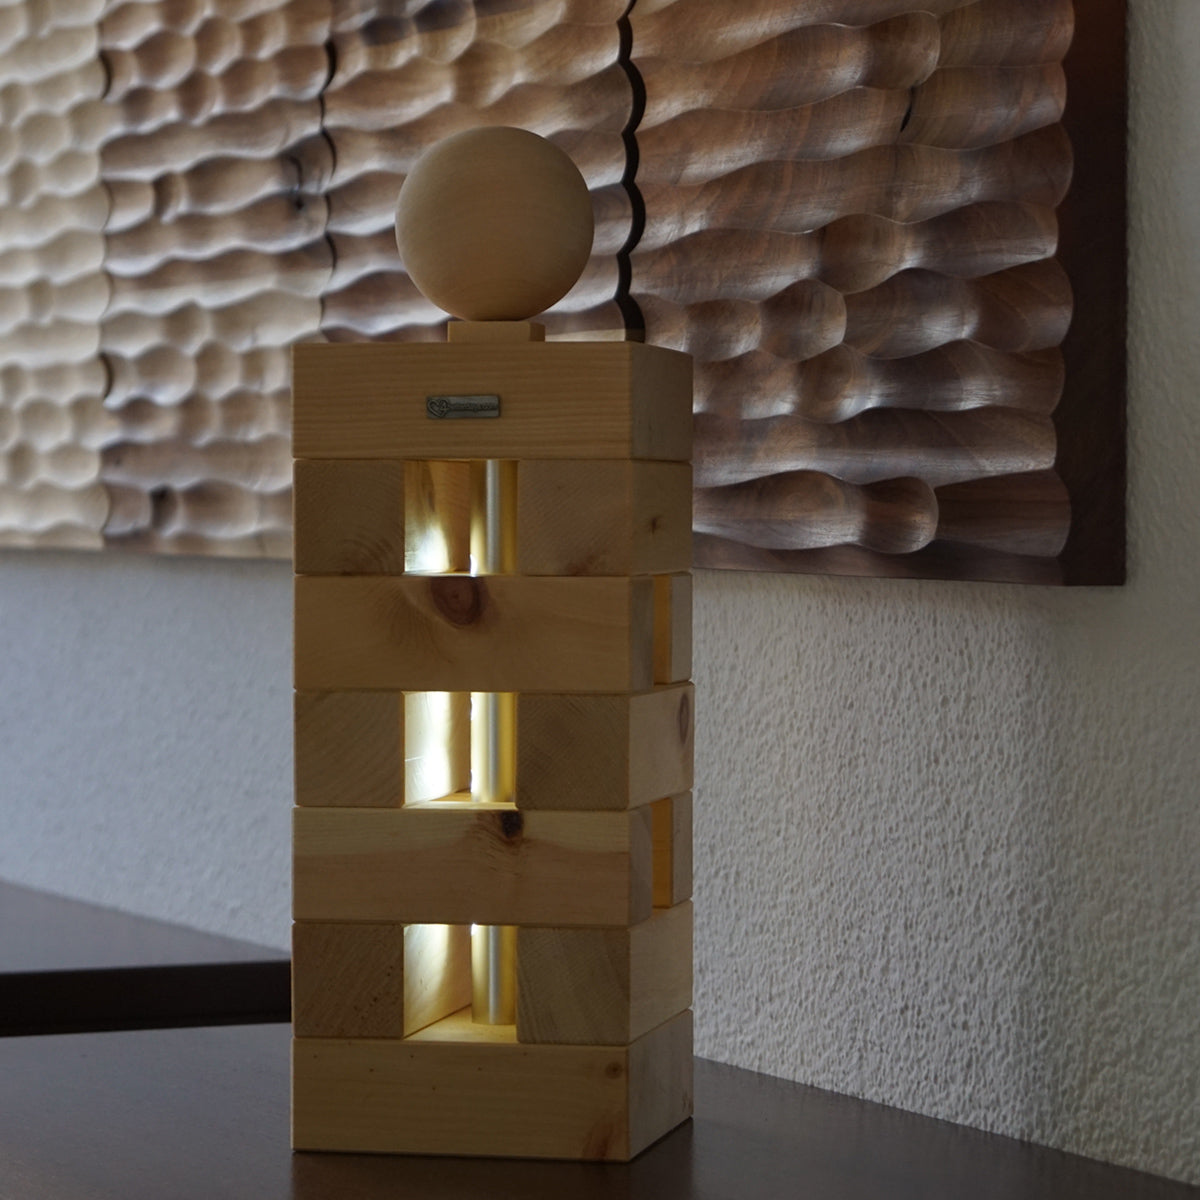 Zirbenlampe - 'Soft & Ambient' 36x12x12 cm - handgemacht in Tirol